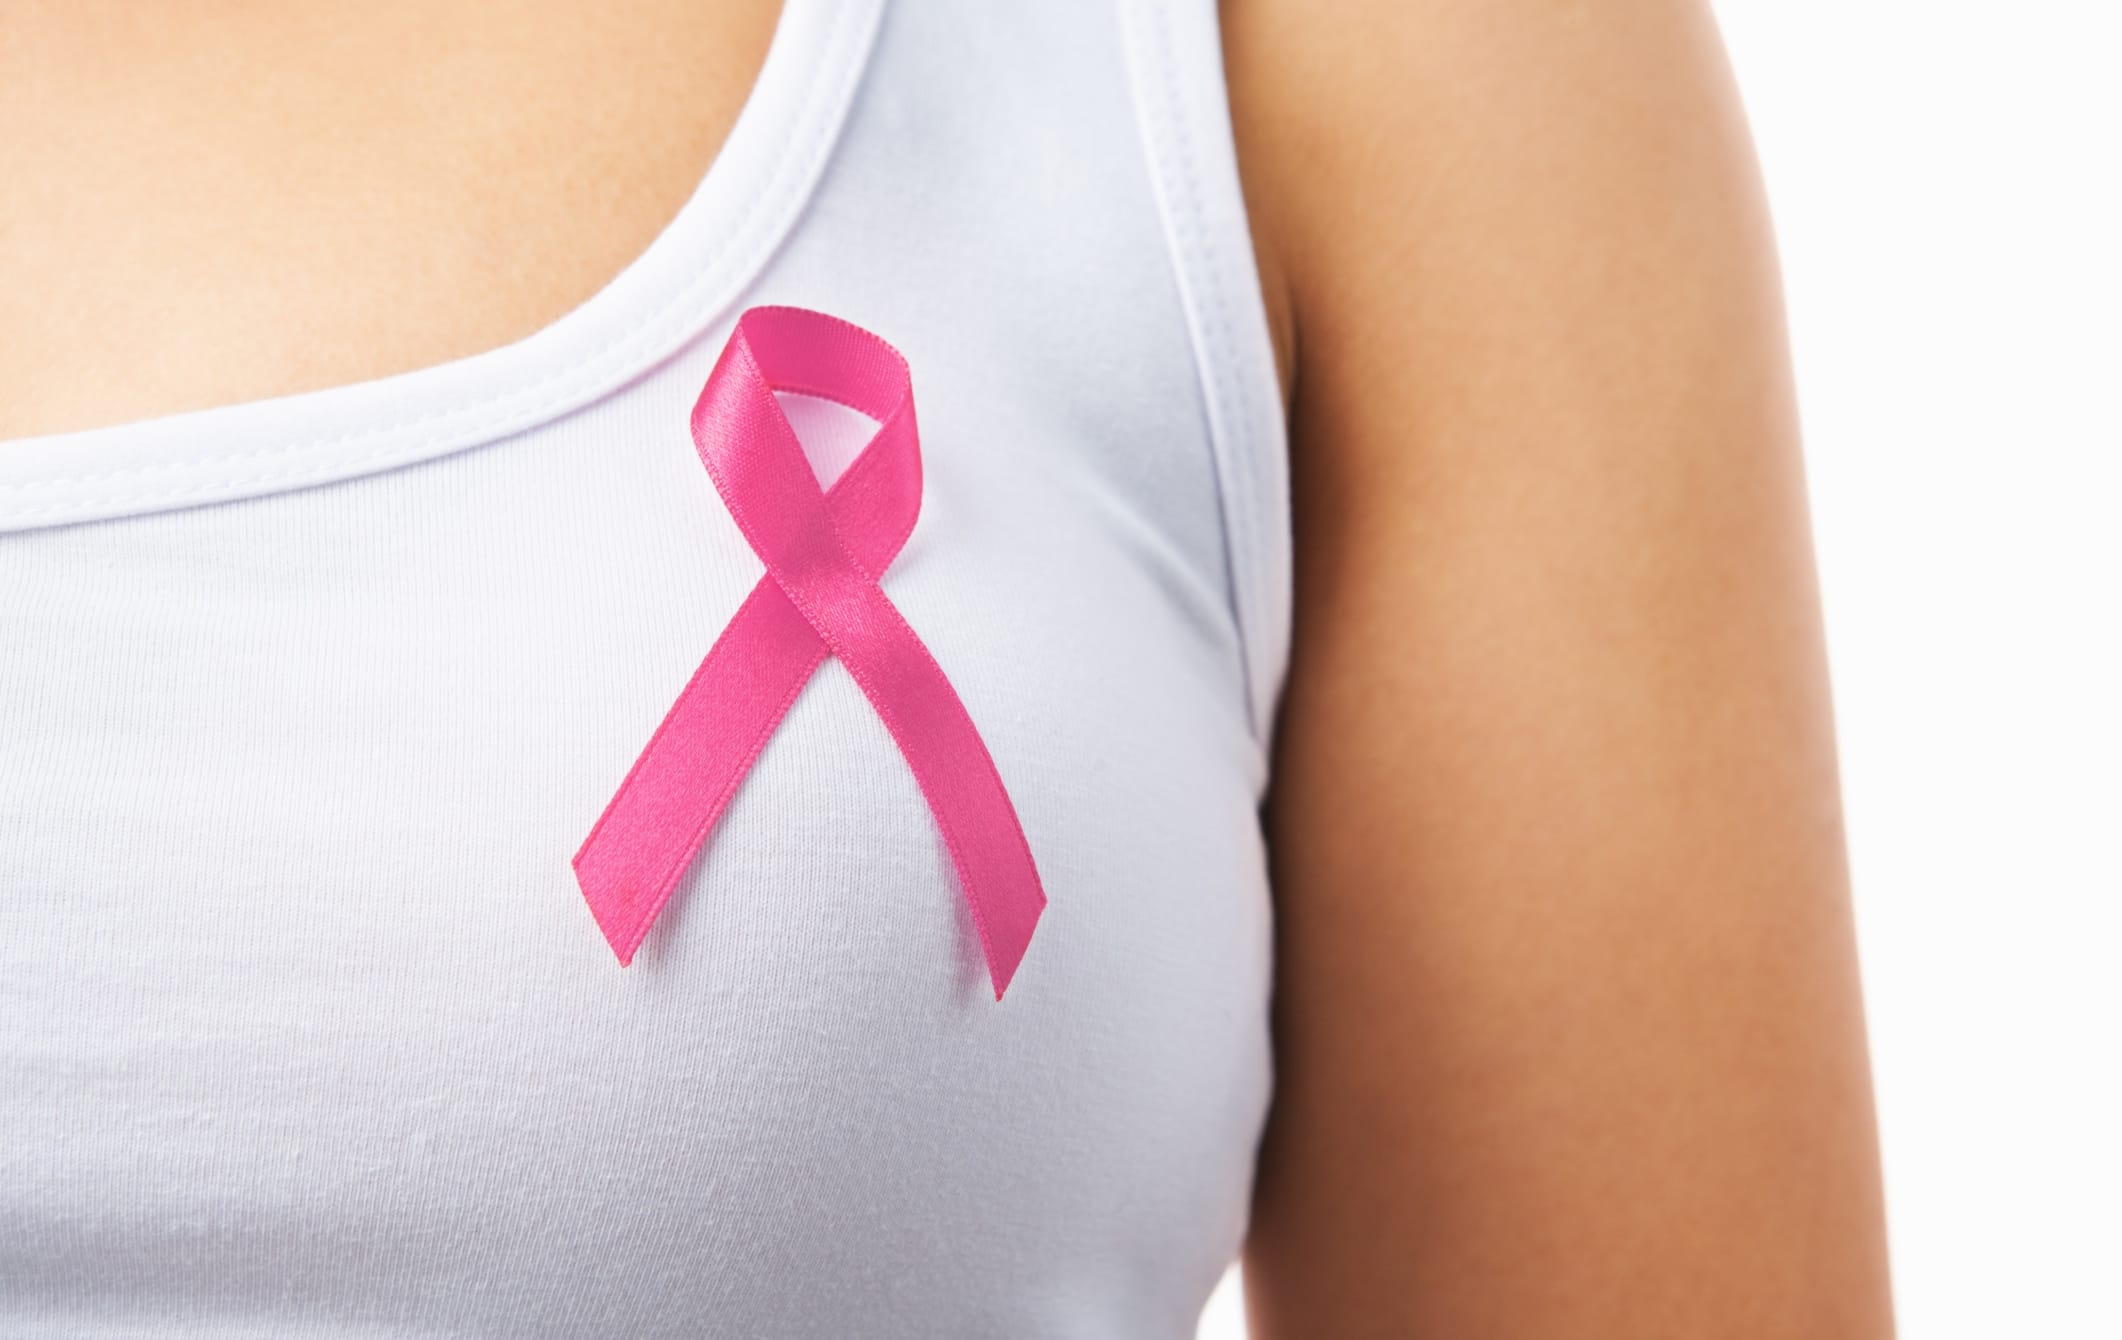 Tumore al seno: i consigli per l'autoesame